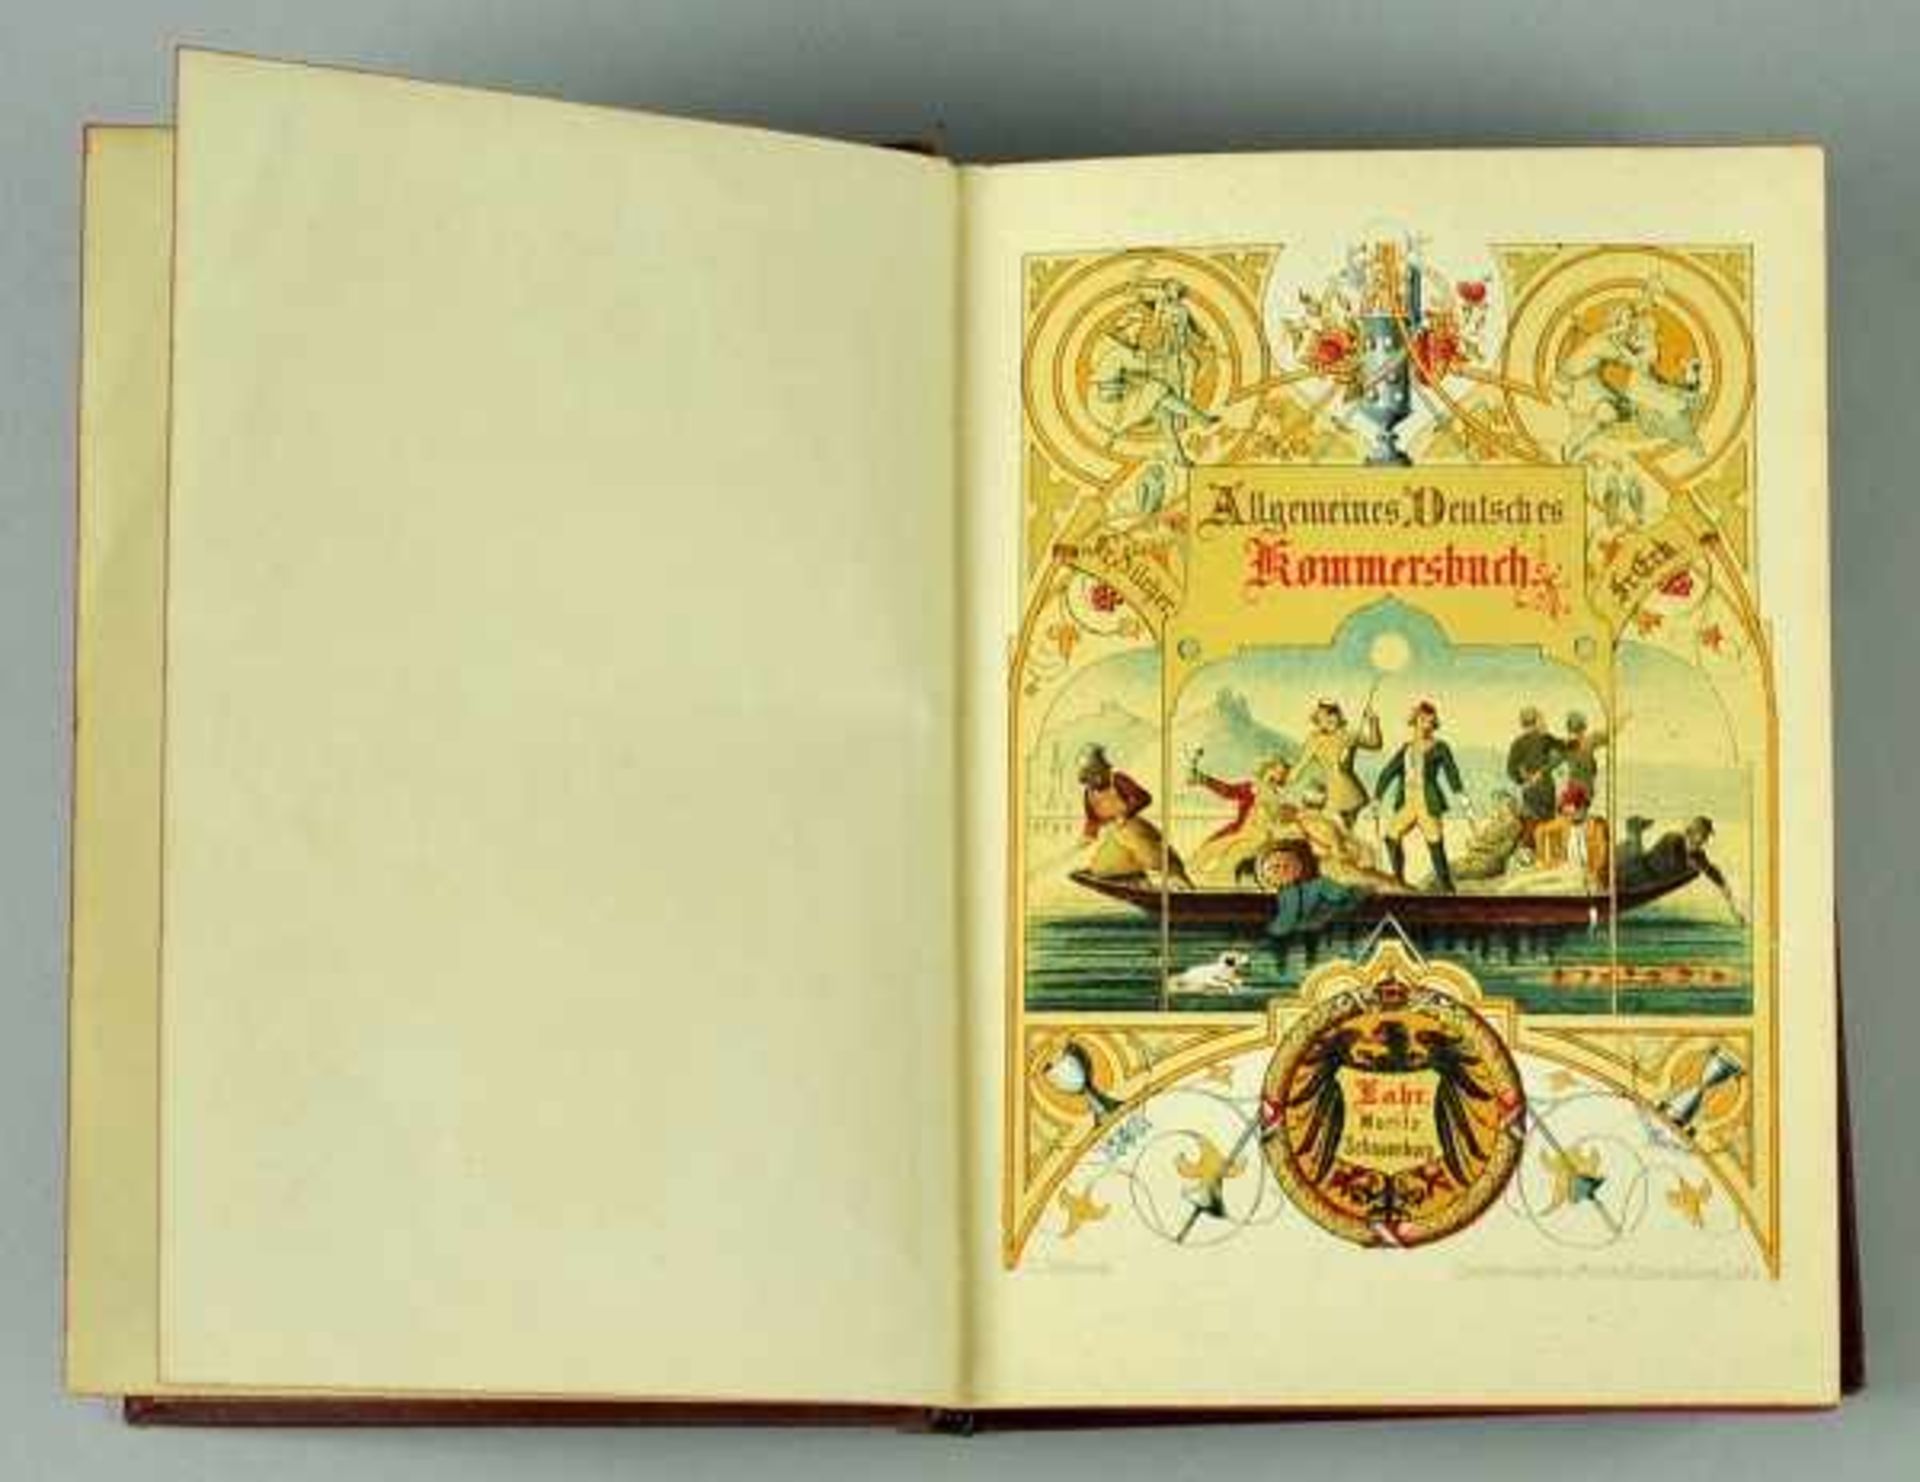 STUDENTIKA Deckelkrug mit Umschrift, Zinn, Heidelberg,dazu Liederbuch - Bild 2 aus 4